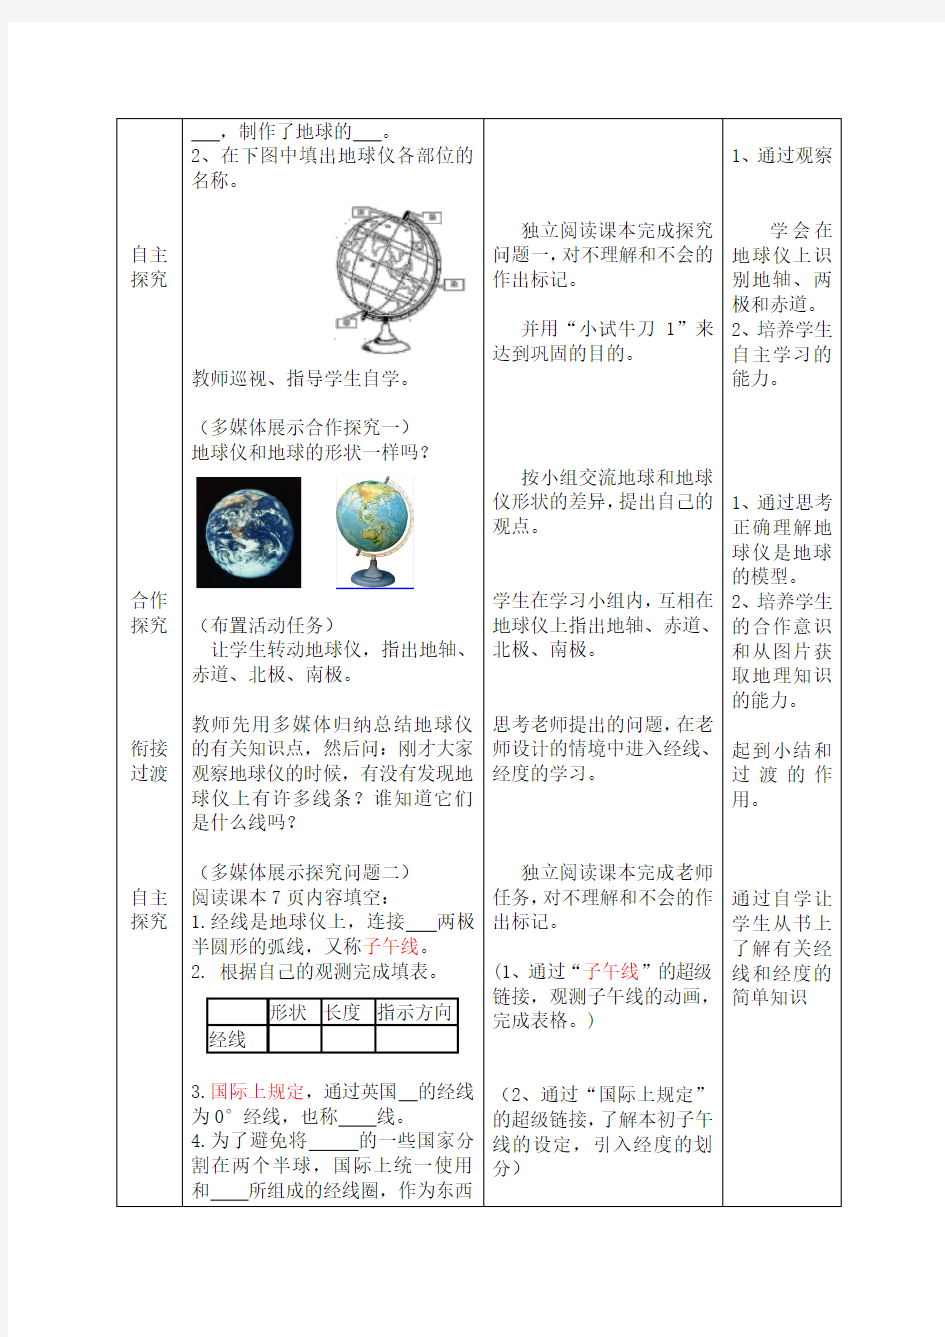 地理七年级上册第一章第二节《地球仪和经纬网》教案